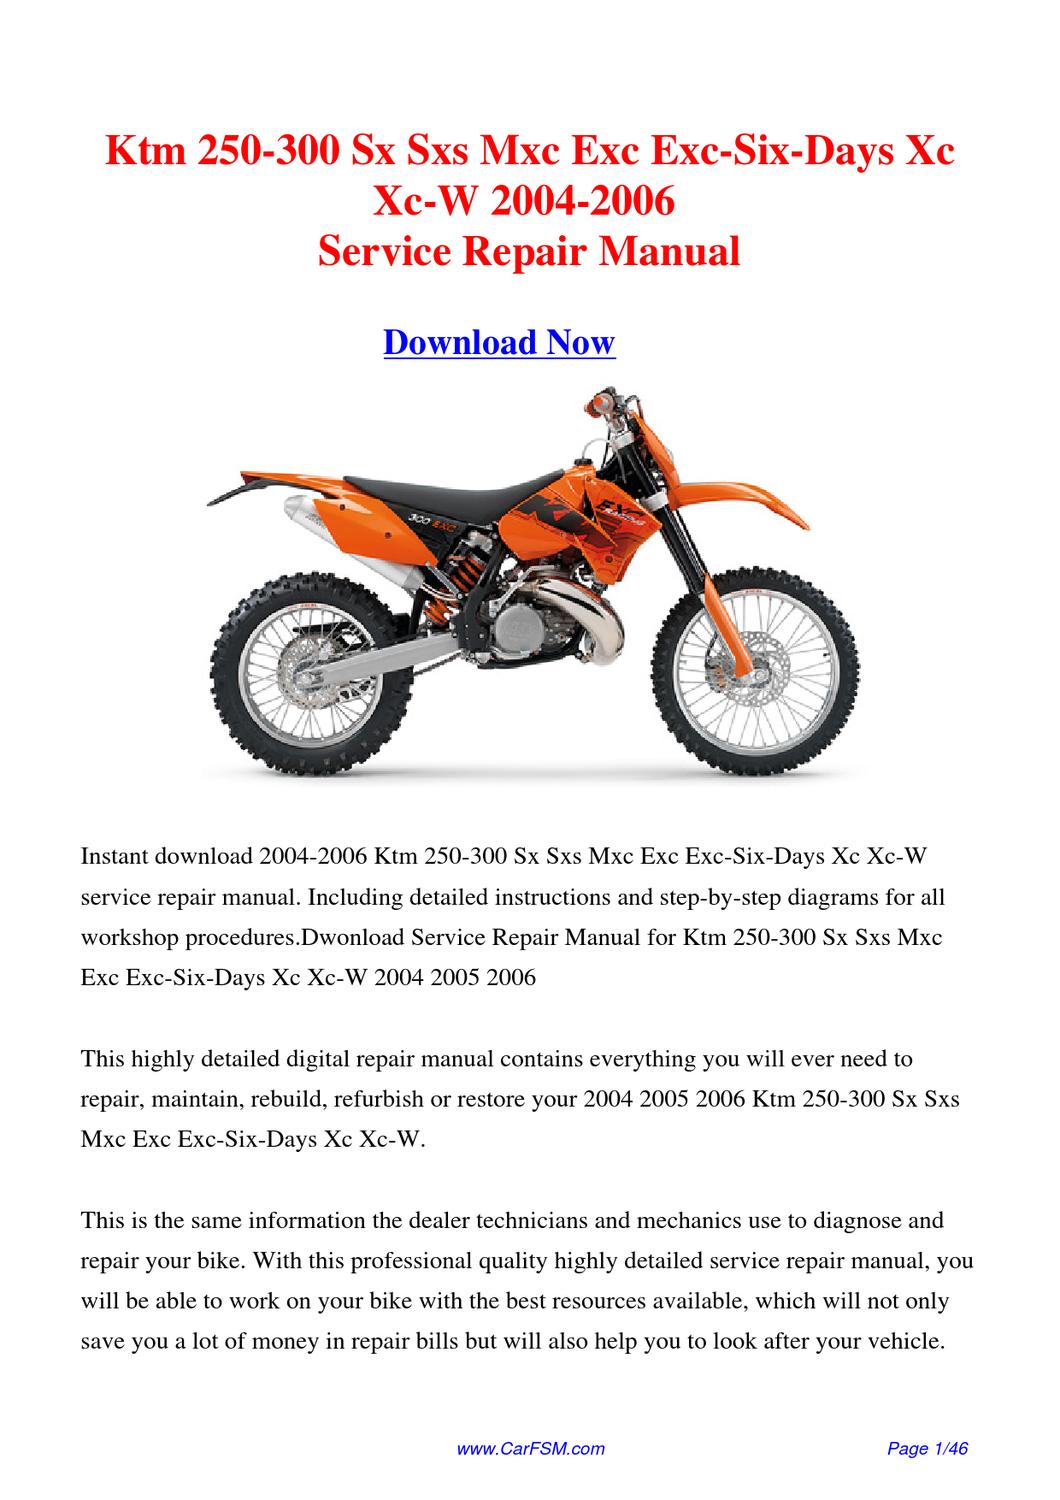 2017 ktm 250 sxf repair manual download